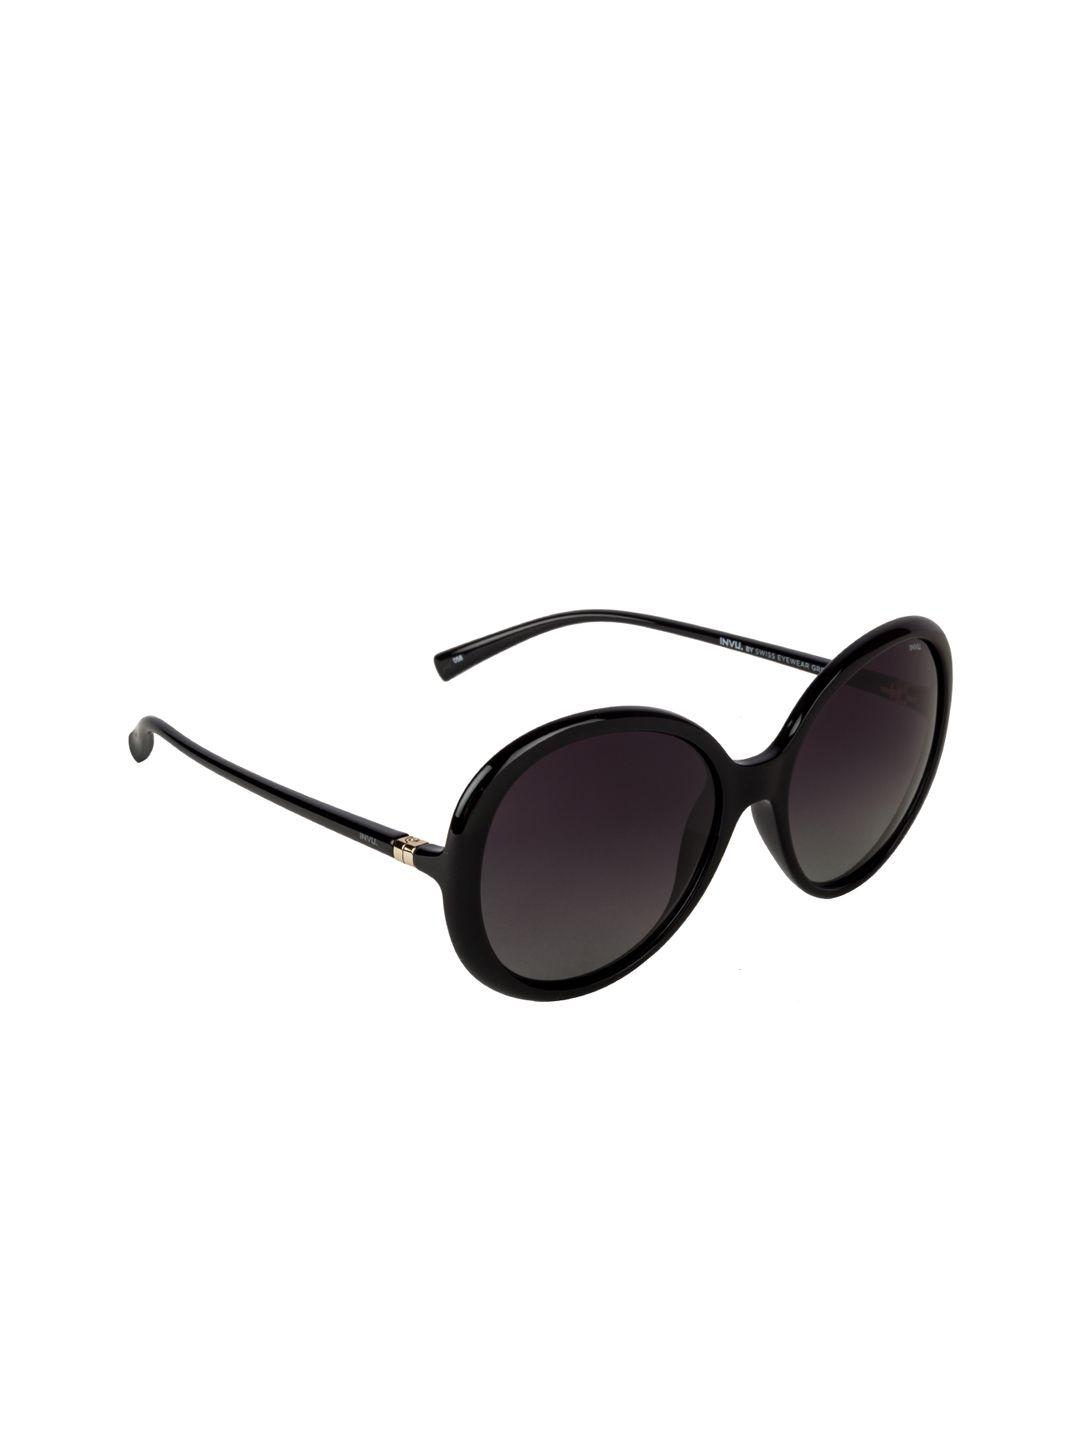 invu women oval sunglasses b2935a